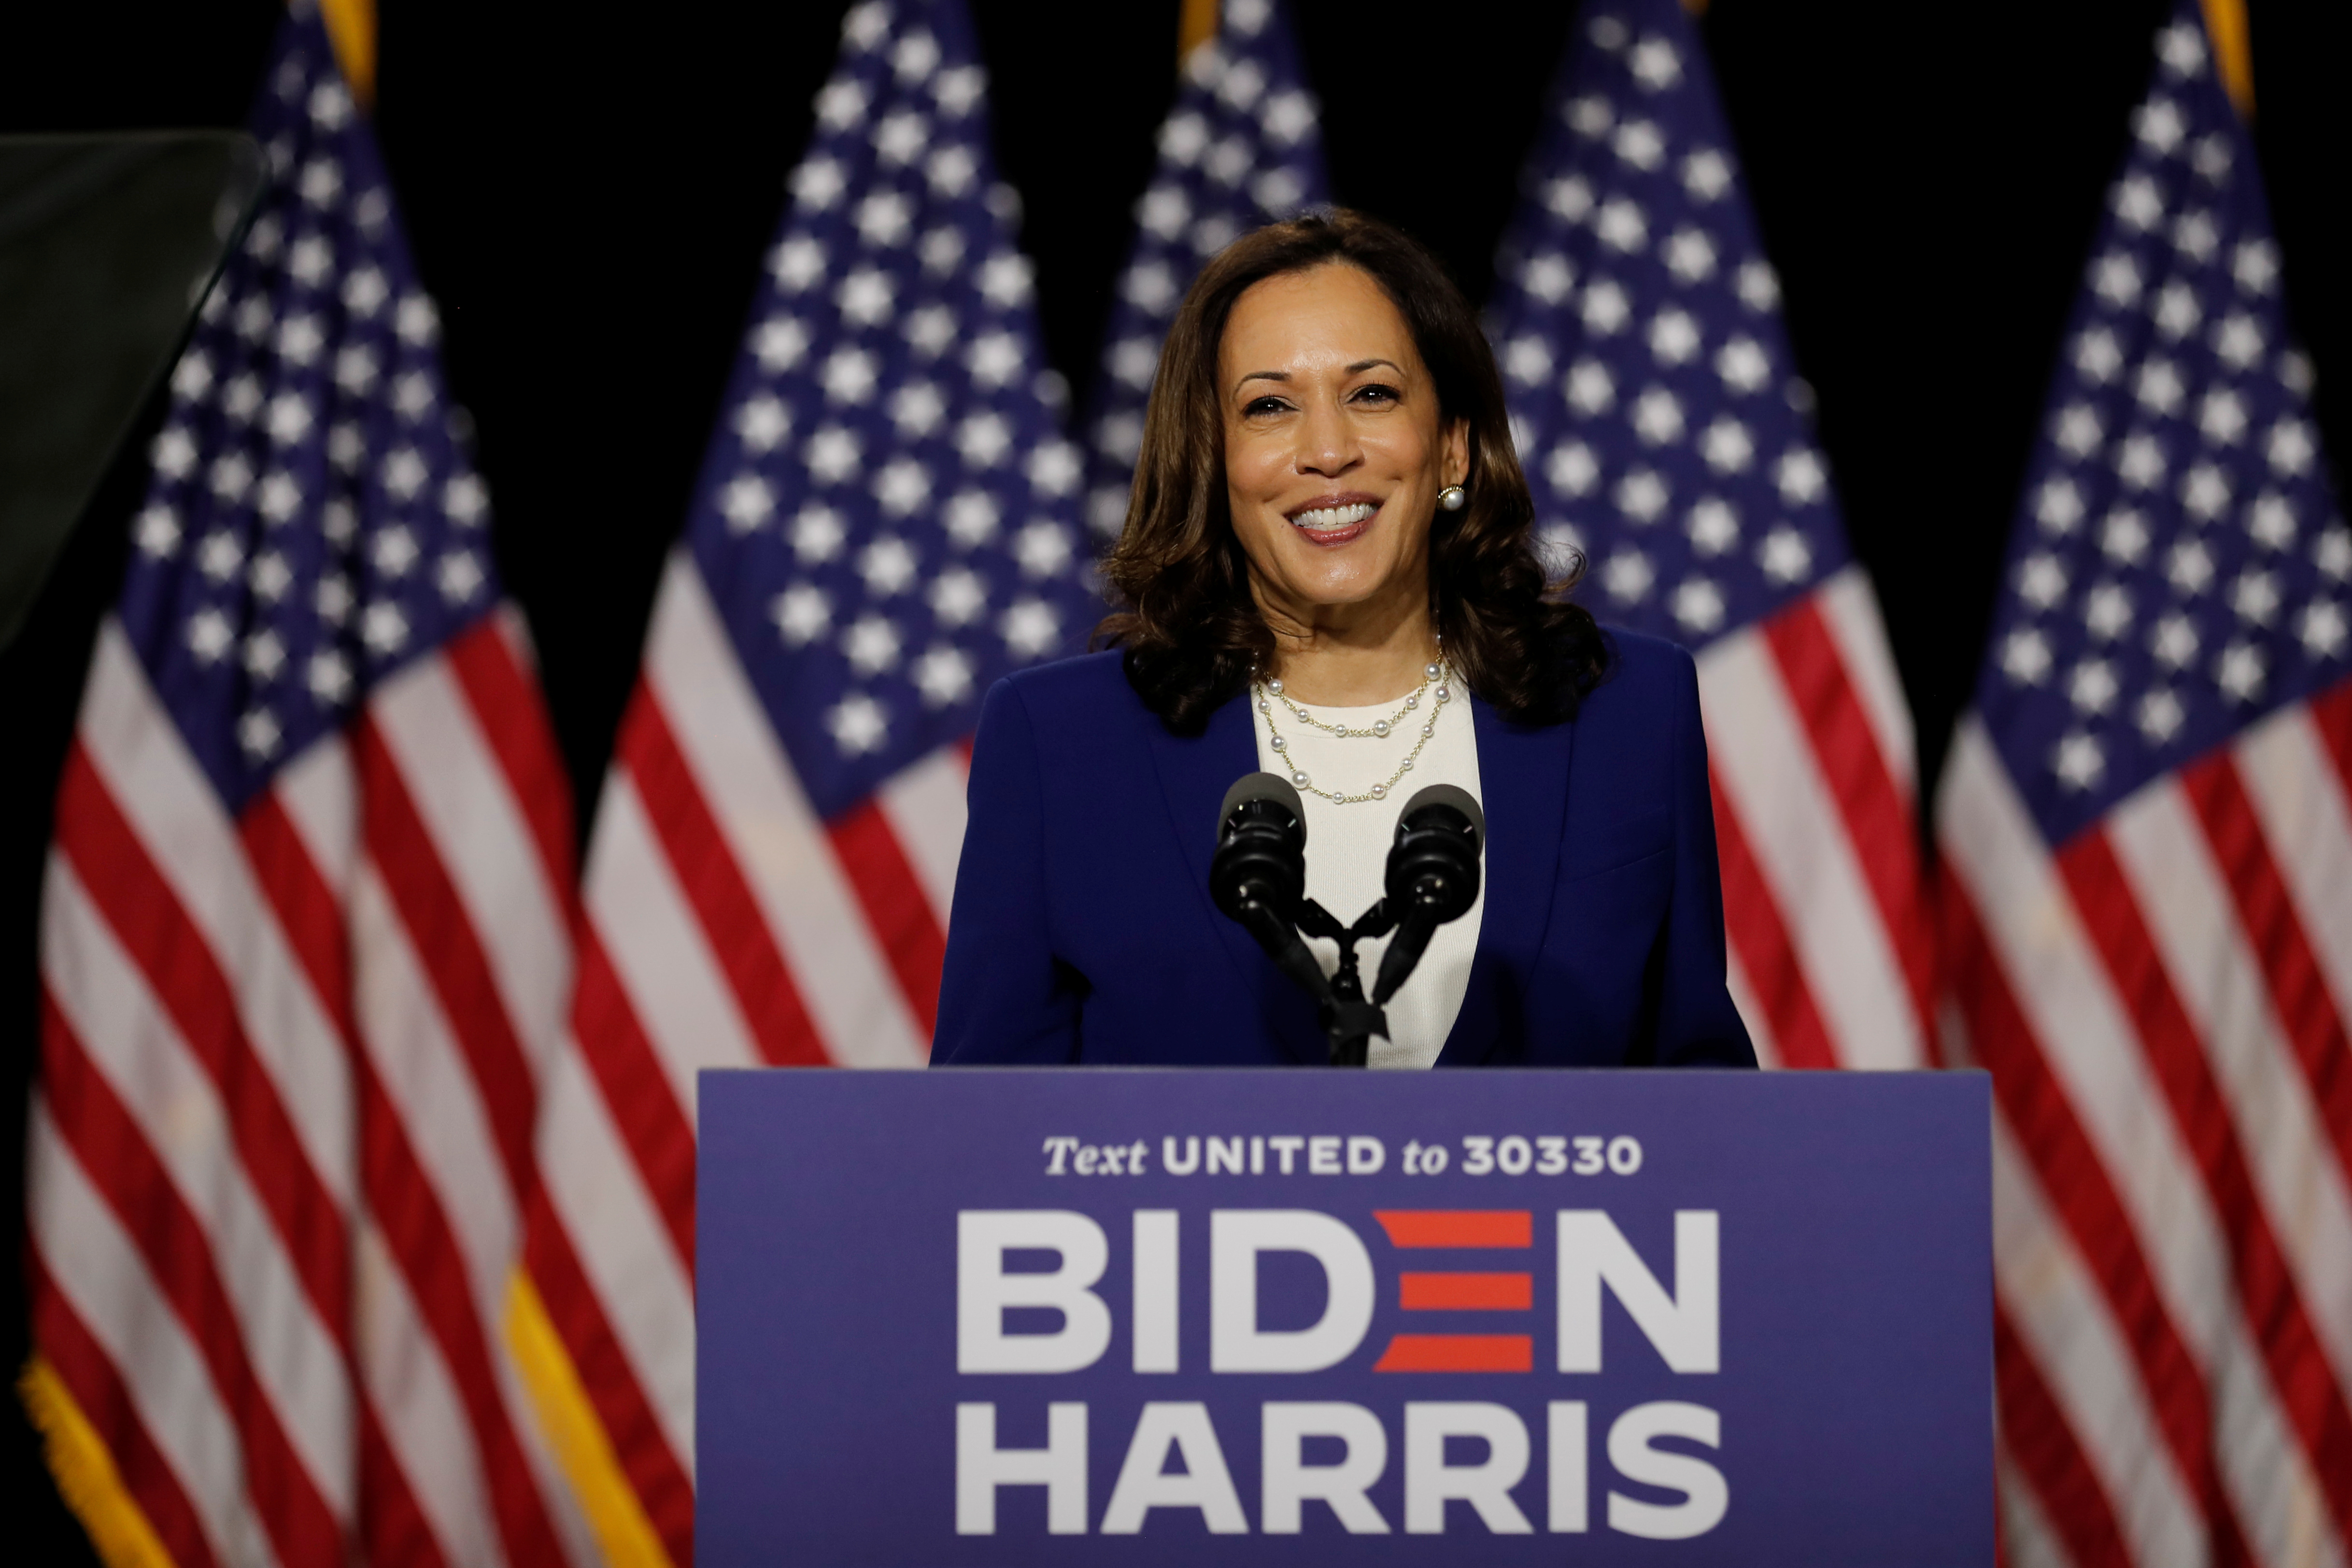 La candidata a vicepresidente demócrata, Kamala Harris, en su primer acto de campaña junto a Joe Biden en la Alexis Dupont High School in Wilmington, Delaware. REUTERS/Carlos Barria